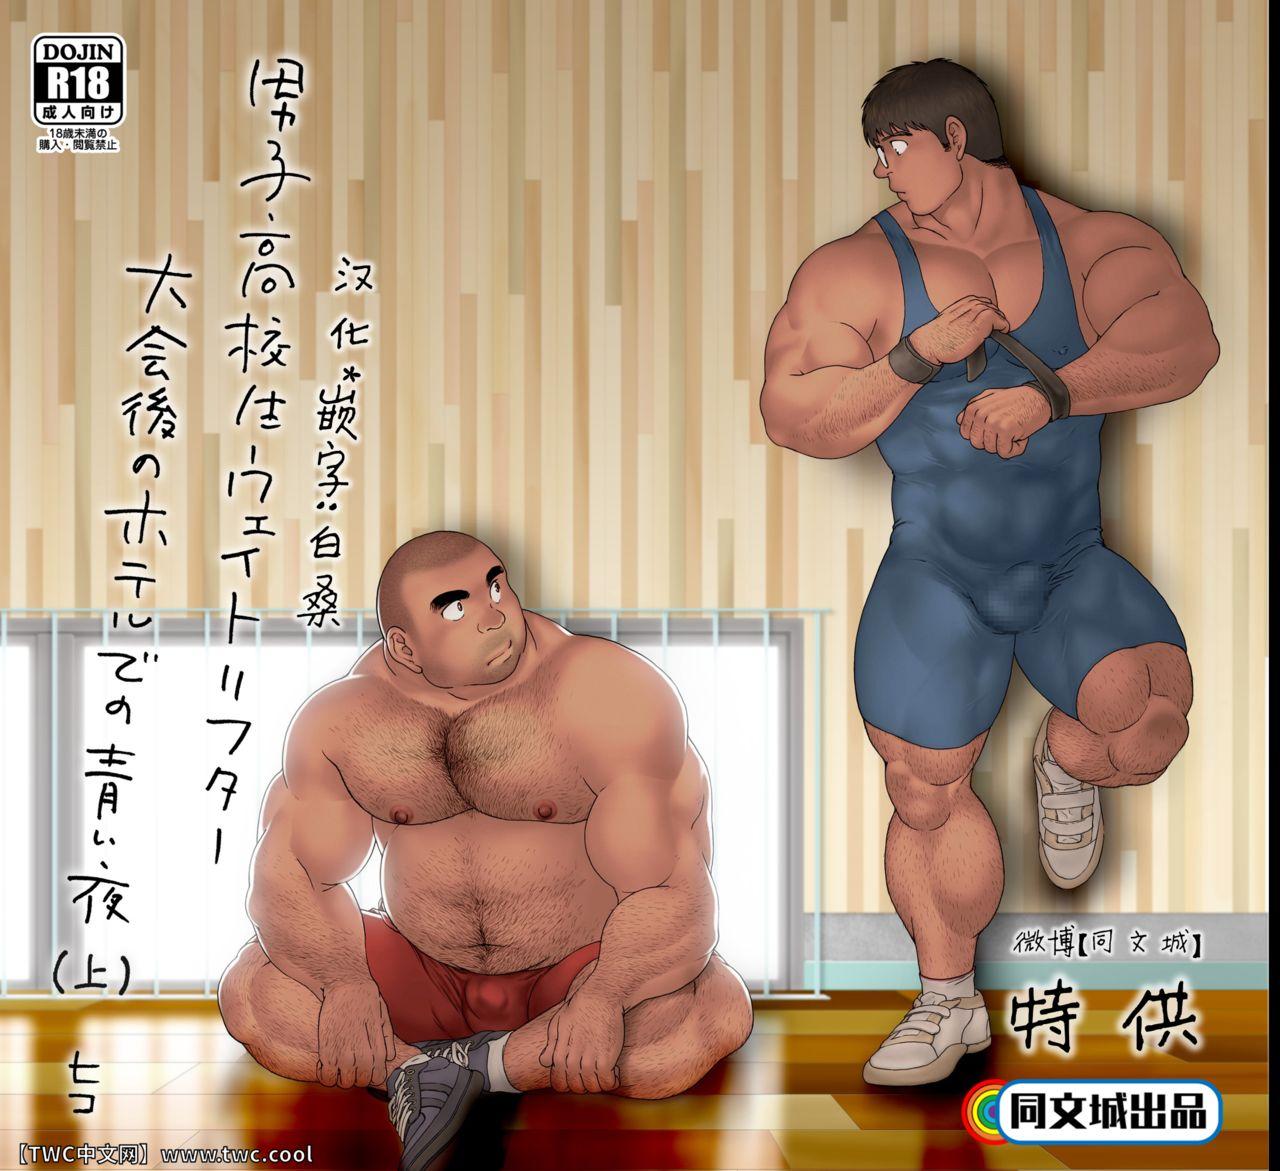 Deep Throat Danshi Koukousei Weightlifter Taikai-go no Hotel de no Aoi Yoru Gay Amateur - Picture 1